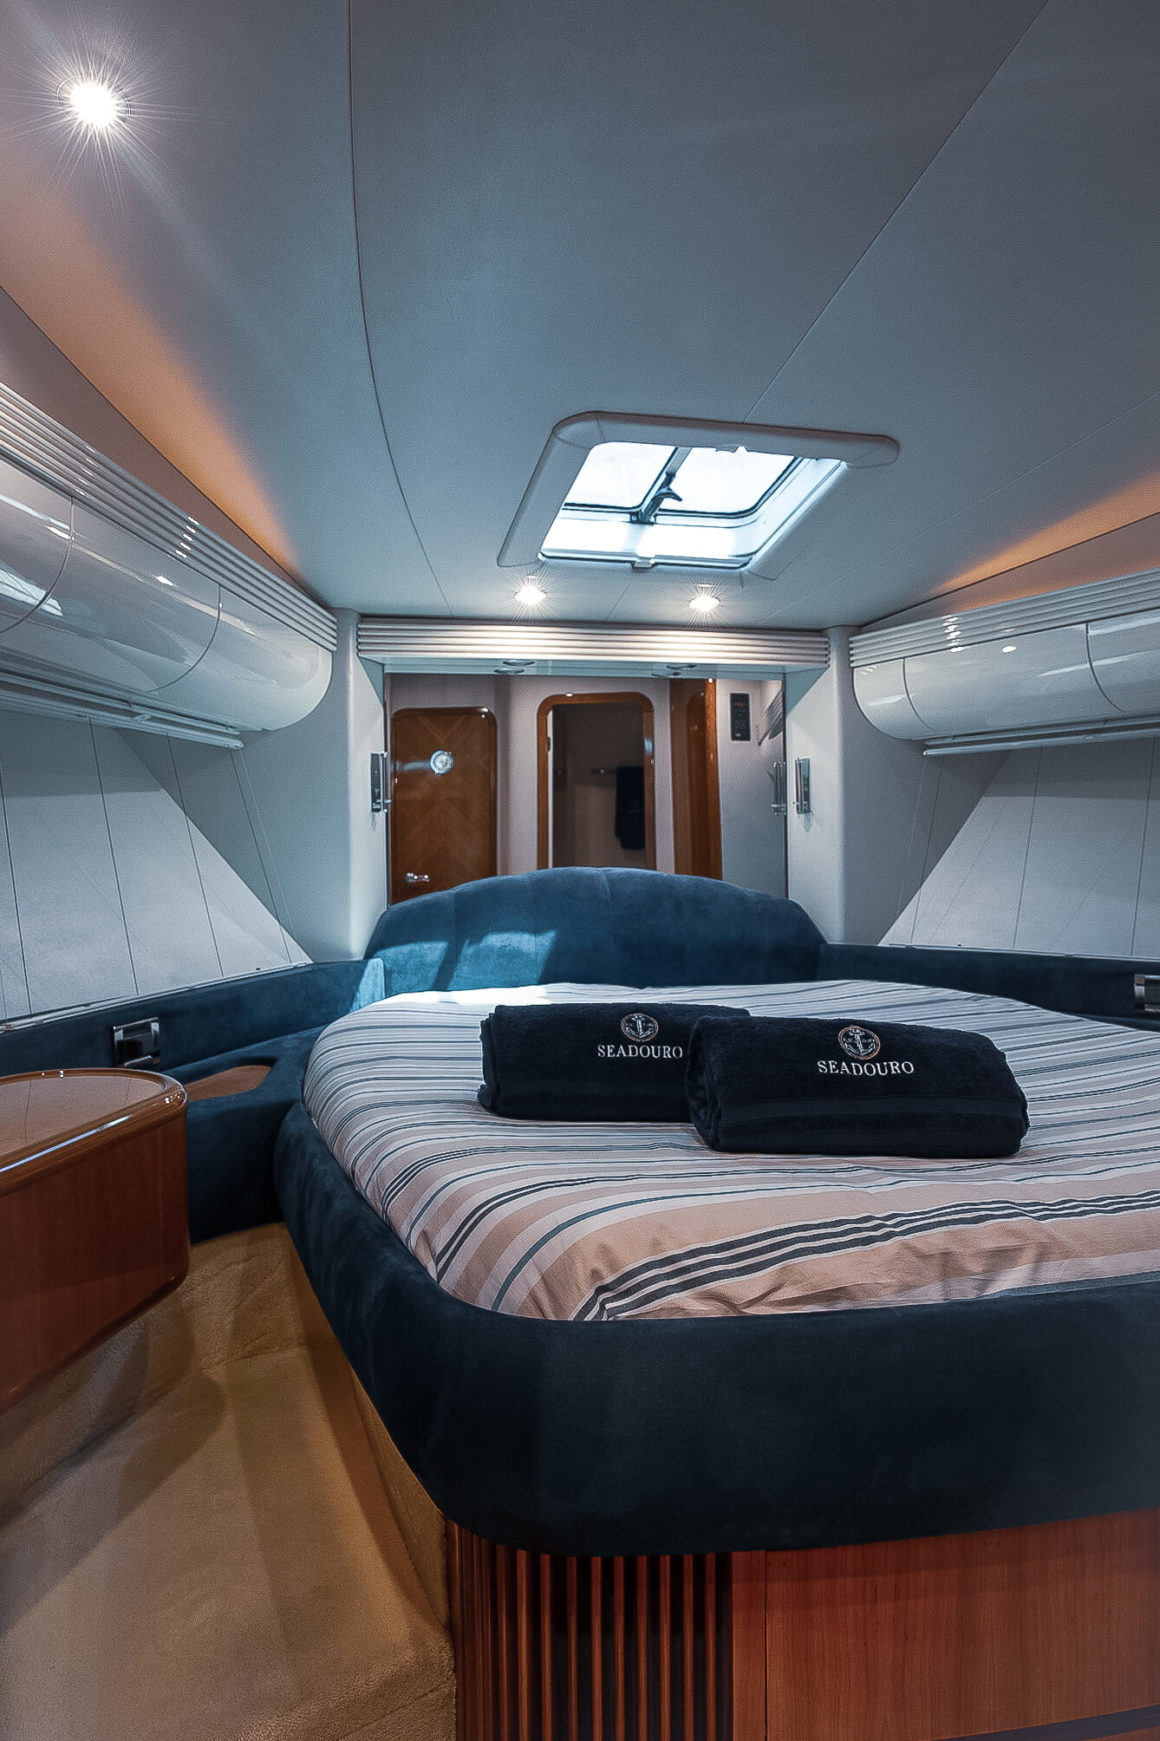 Passe alguns dias a bordo com direito à cabines espaçosas e confortáveis